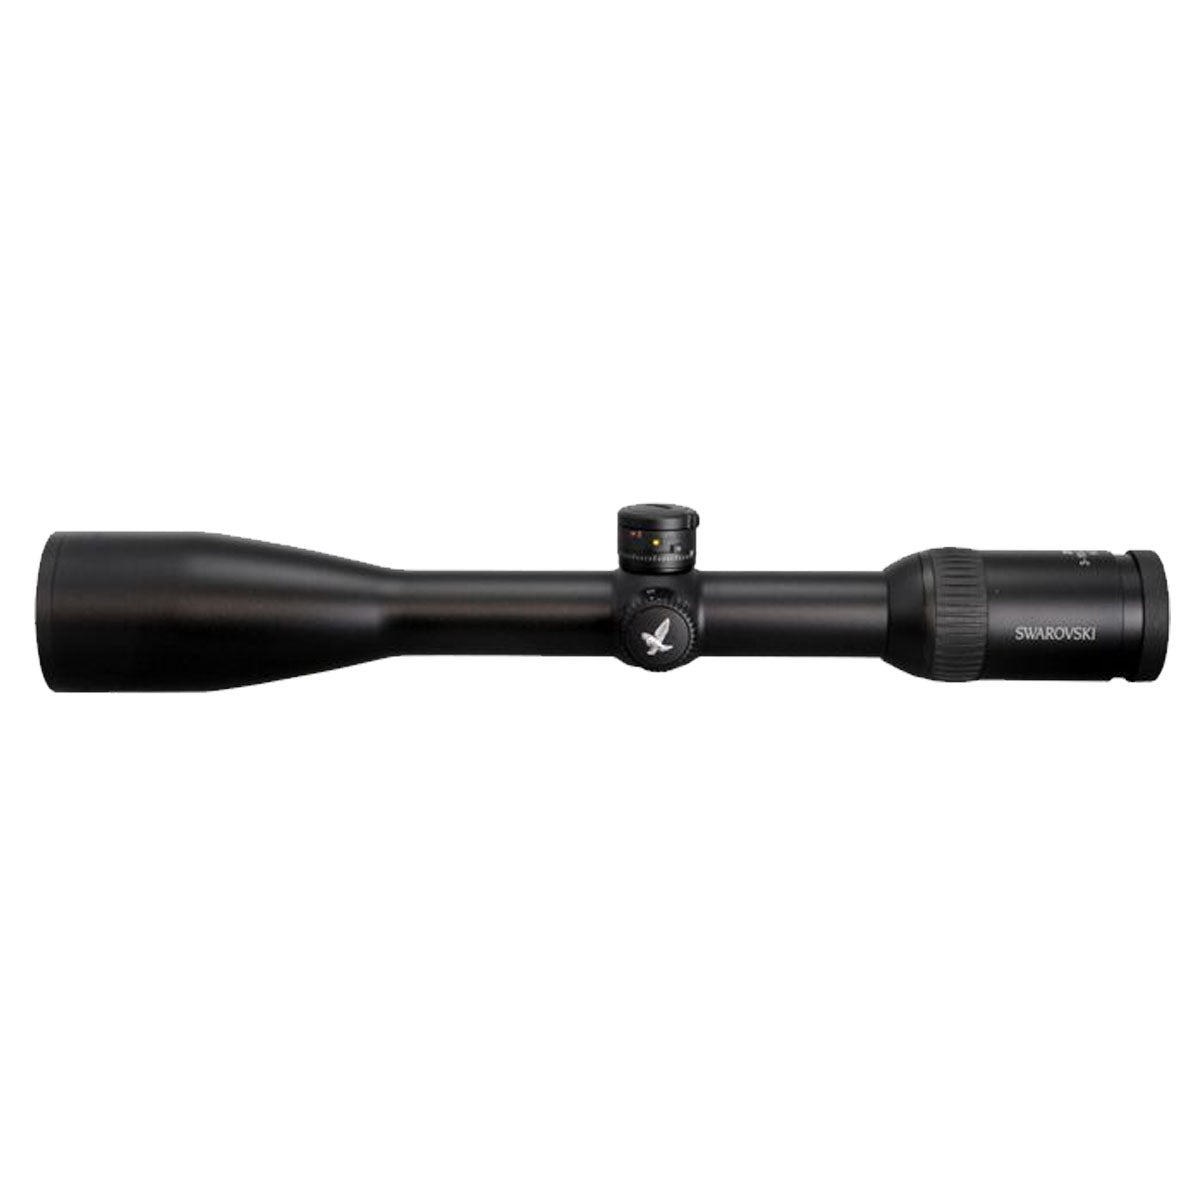 Swarovski Z6 3-18x50 - BT - PLEX Riflescope in  by GOHUNT | Swarovski Optik - GOHUNT Shop